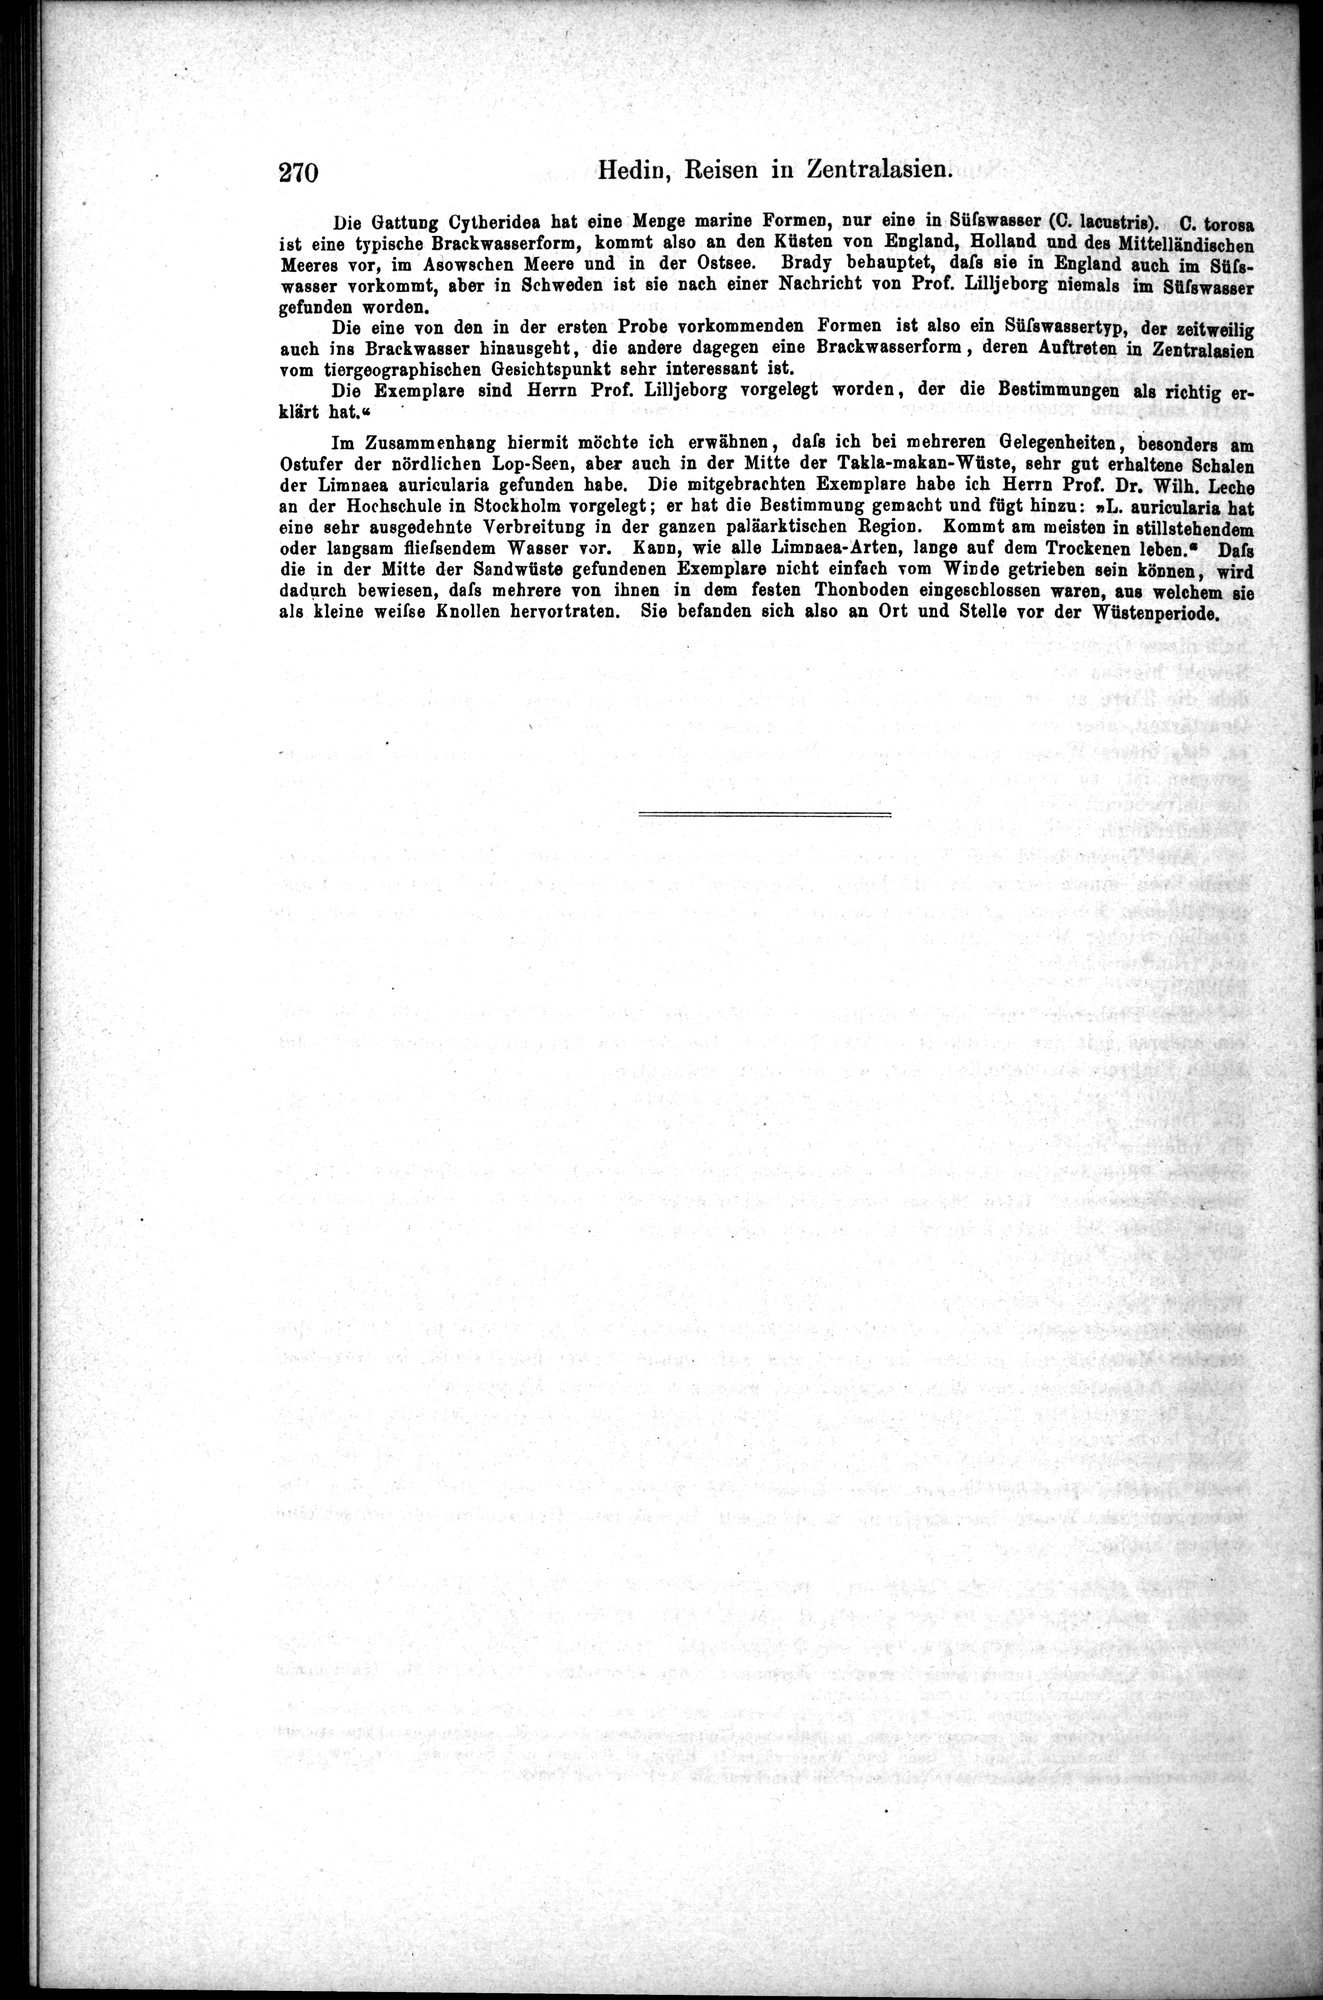 Die Geographische-Wissenschaftlichen Ergebnisse meiner Reisen in Zentralasien, 1894-1897 : vol.1 / Page 282 (Grayscale High Resolution Image)